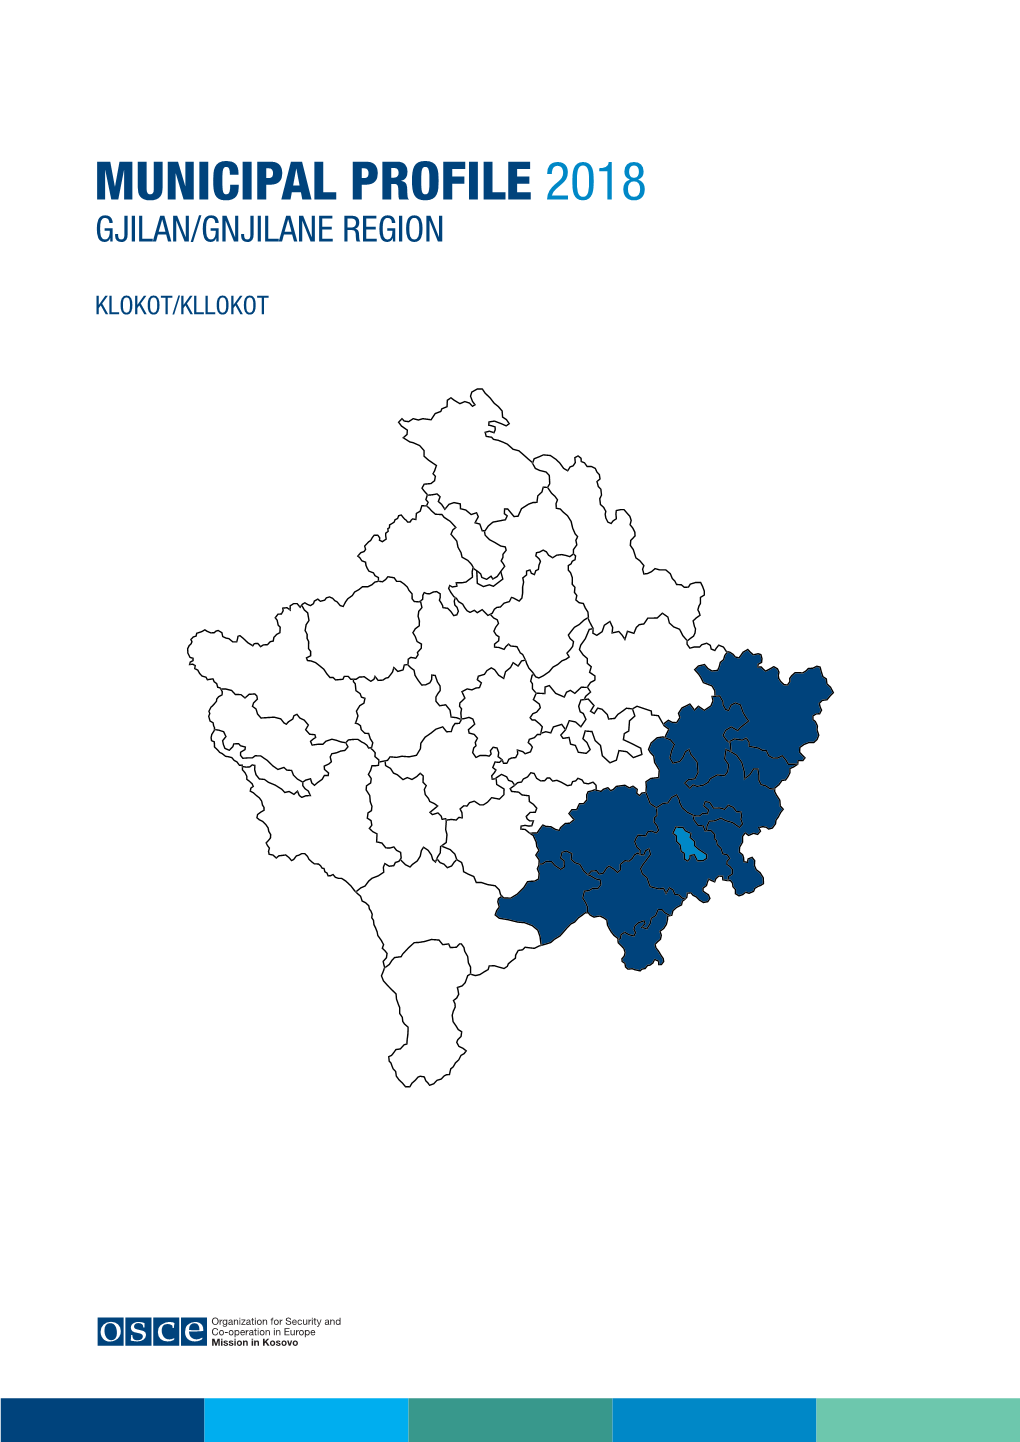 KLOKOT/KLLOKOT the OSCE Regional Centre Gjilan/Gnjilane Covers 11 KLOKOT/KLLOKOT Municipalities, Including Klokot/Kllokot, and Has Teams